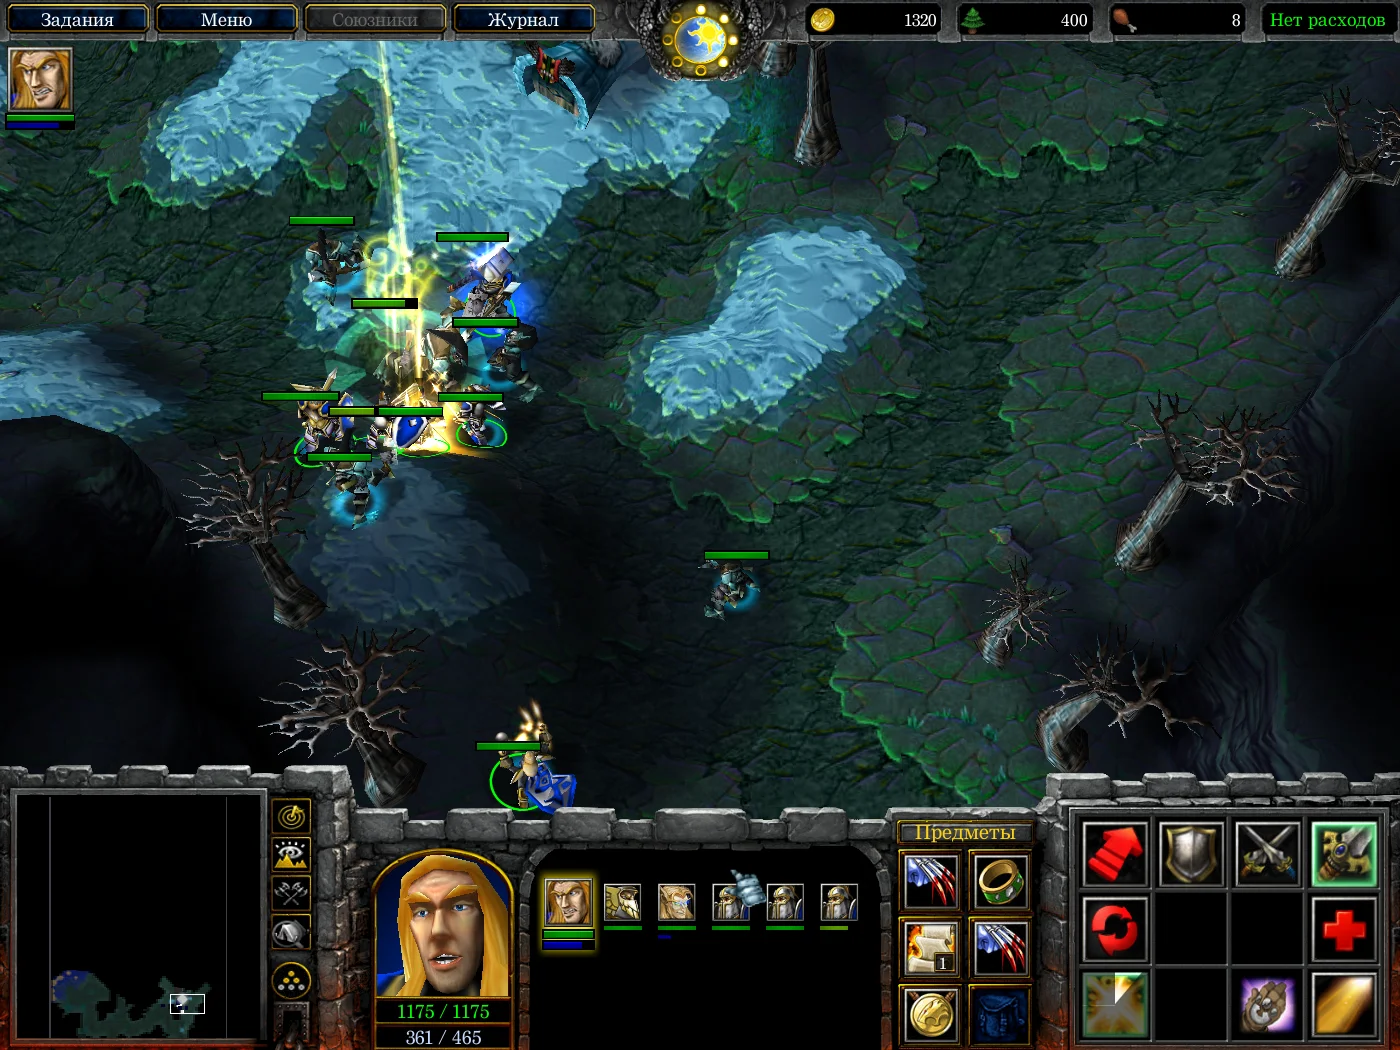 Мнение. Warcraft III гораздо лучше работает как RPG, чем стратегия - фото 2